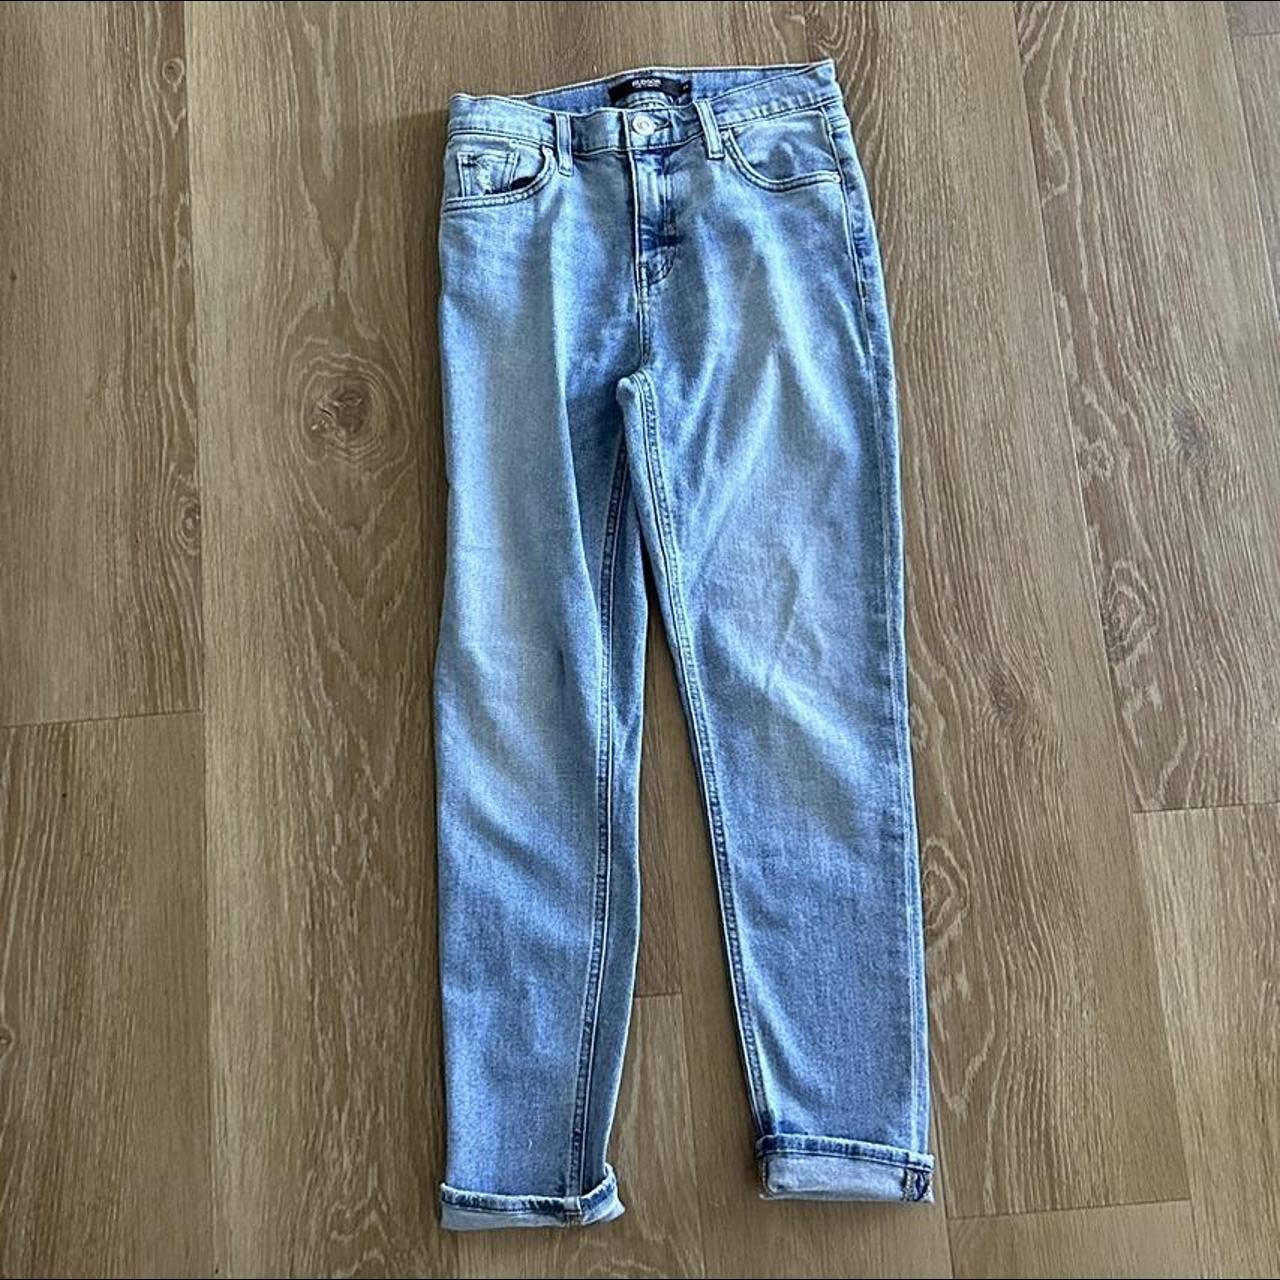 Hudson Los Angeles blue light wash jeans NORMALLY $200! - Depop